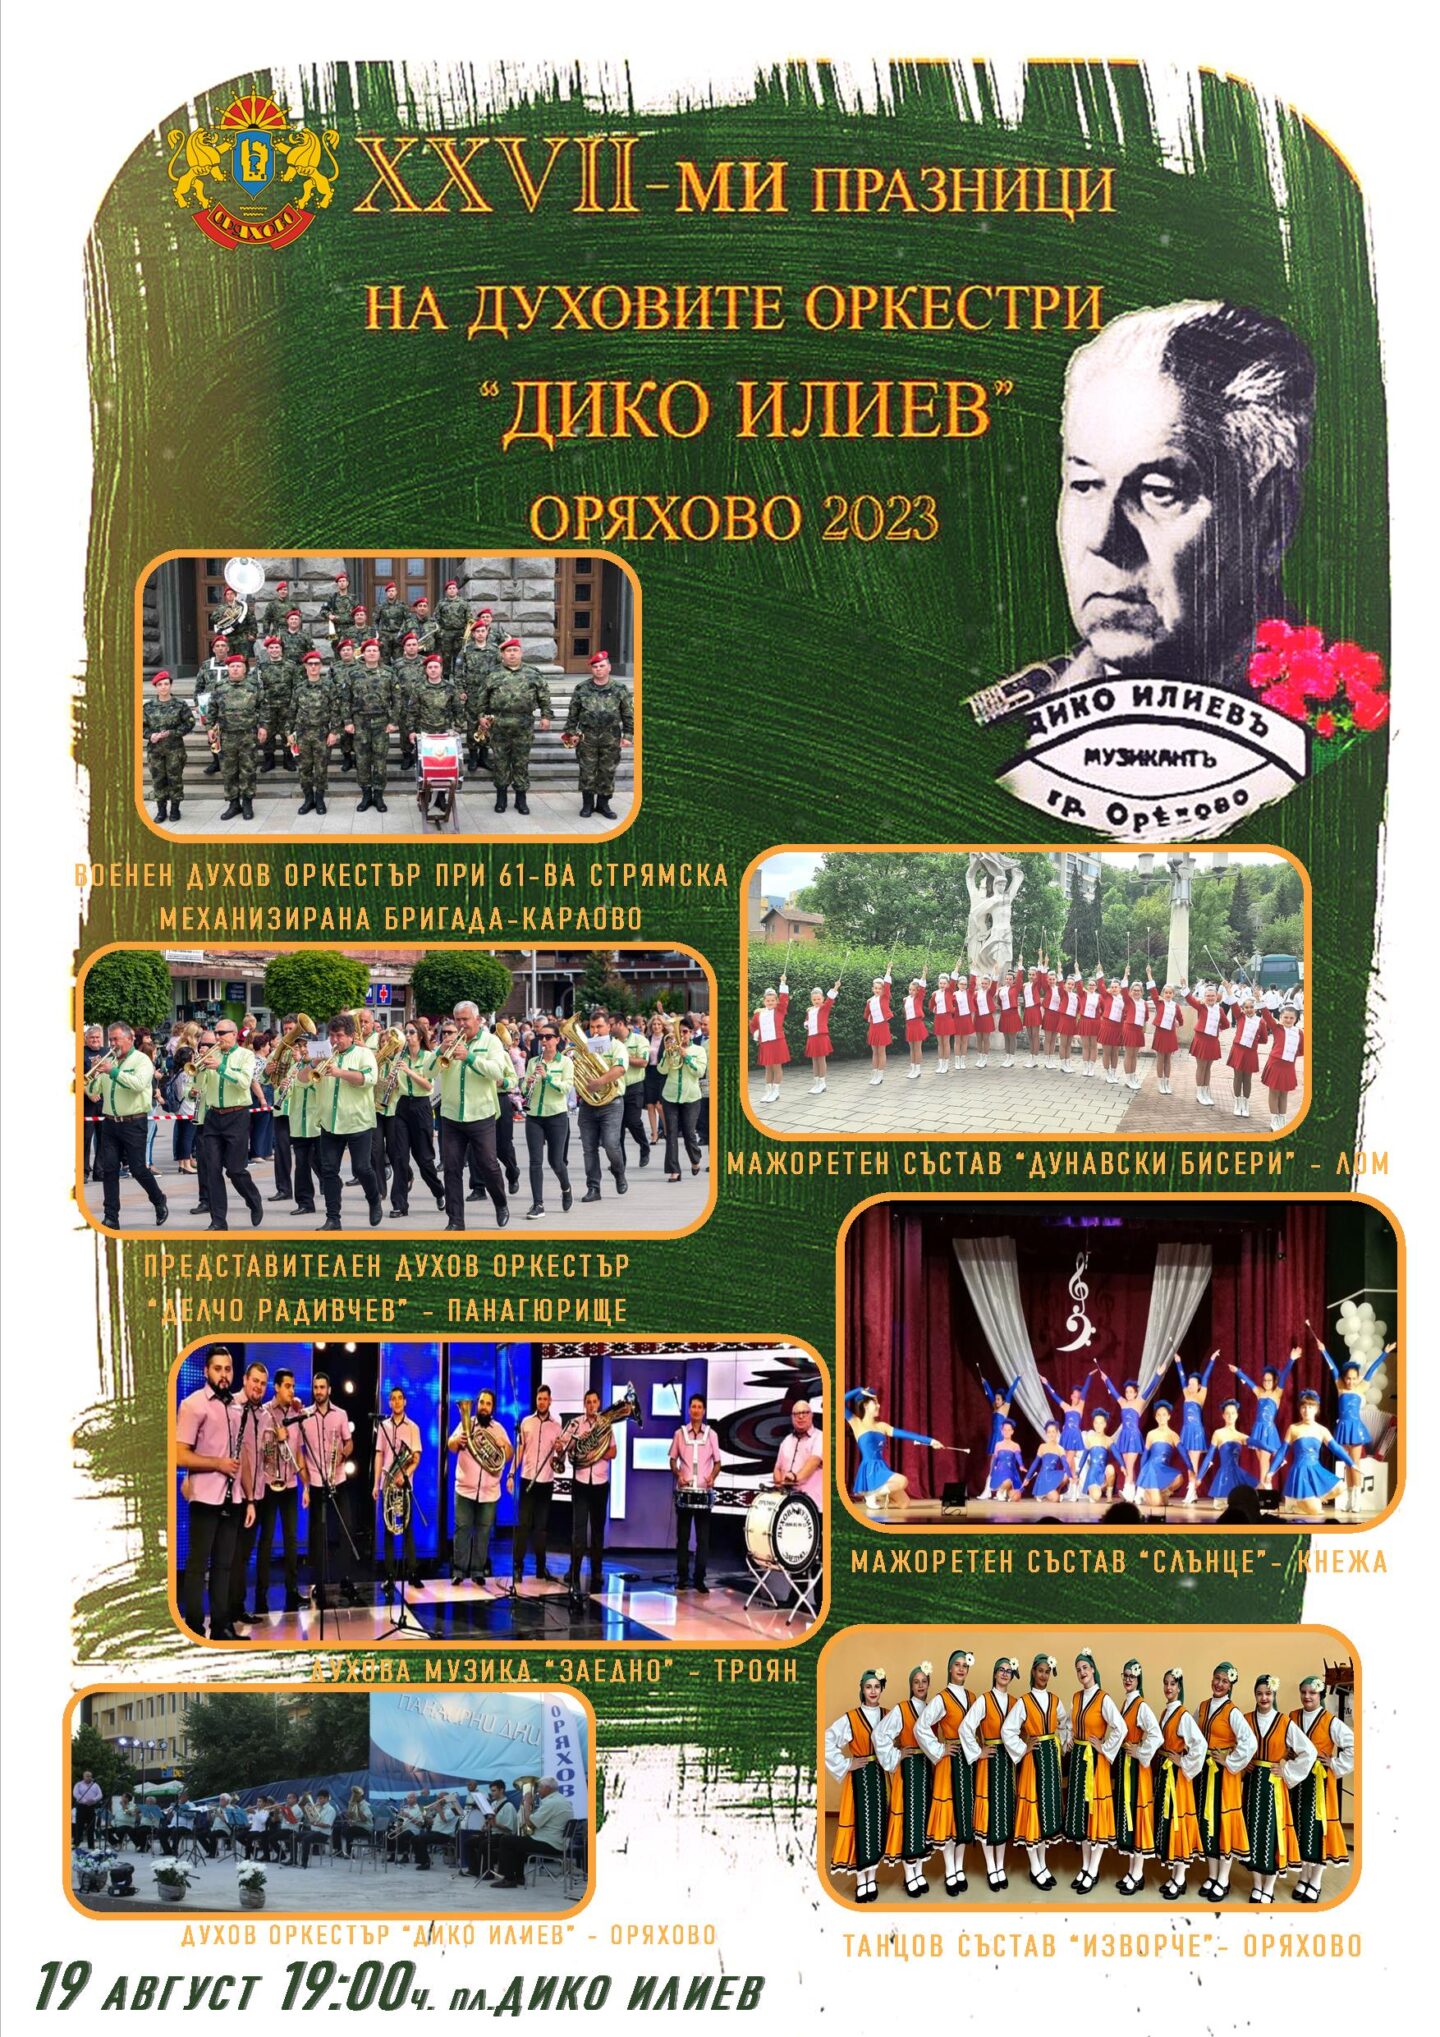 Празници на духовите оркестри „Дико Илиев“ се задават в Оряхово